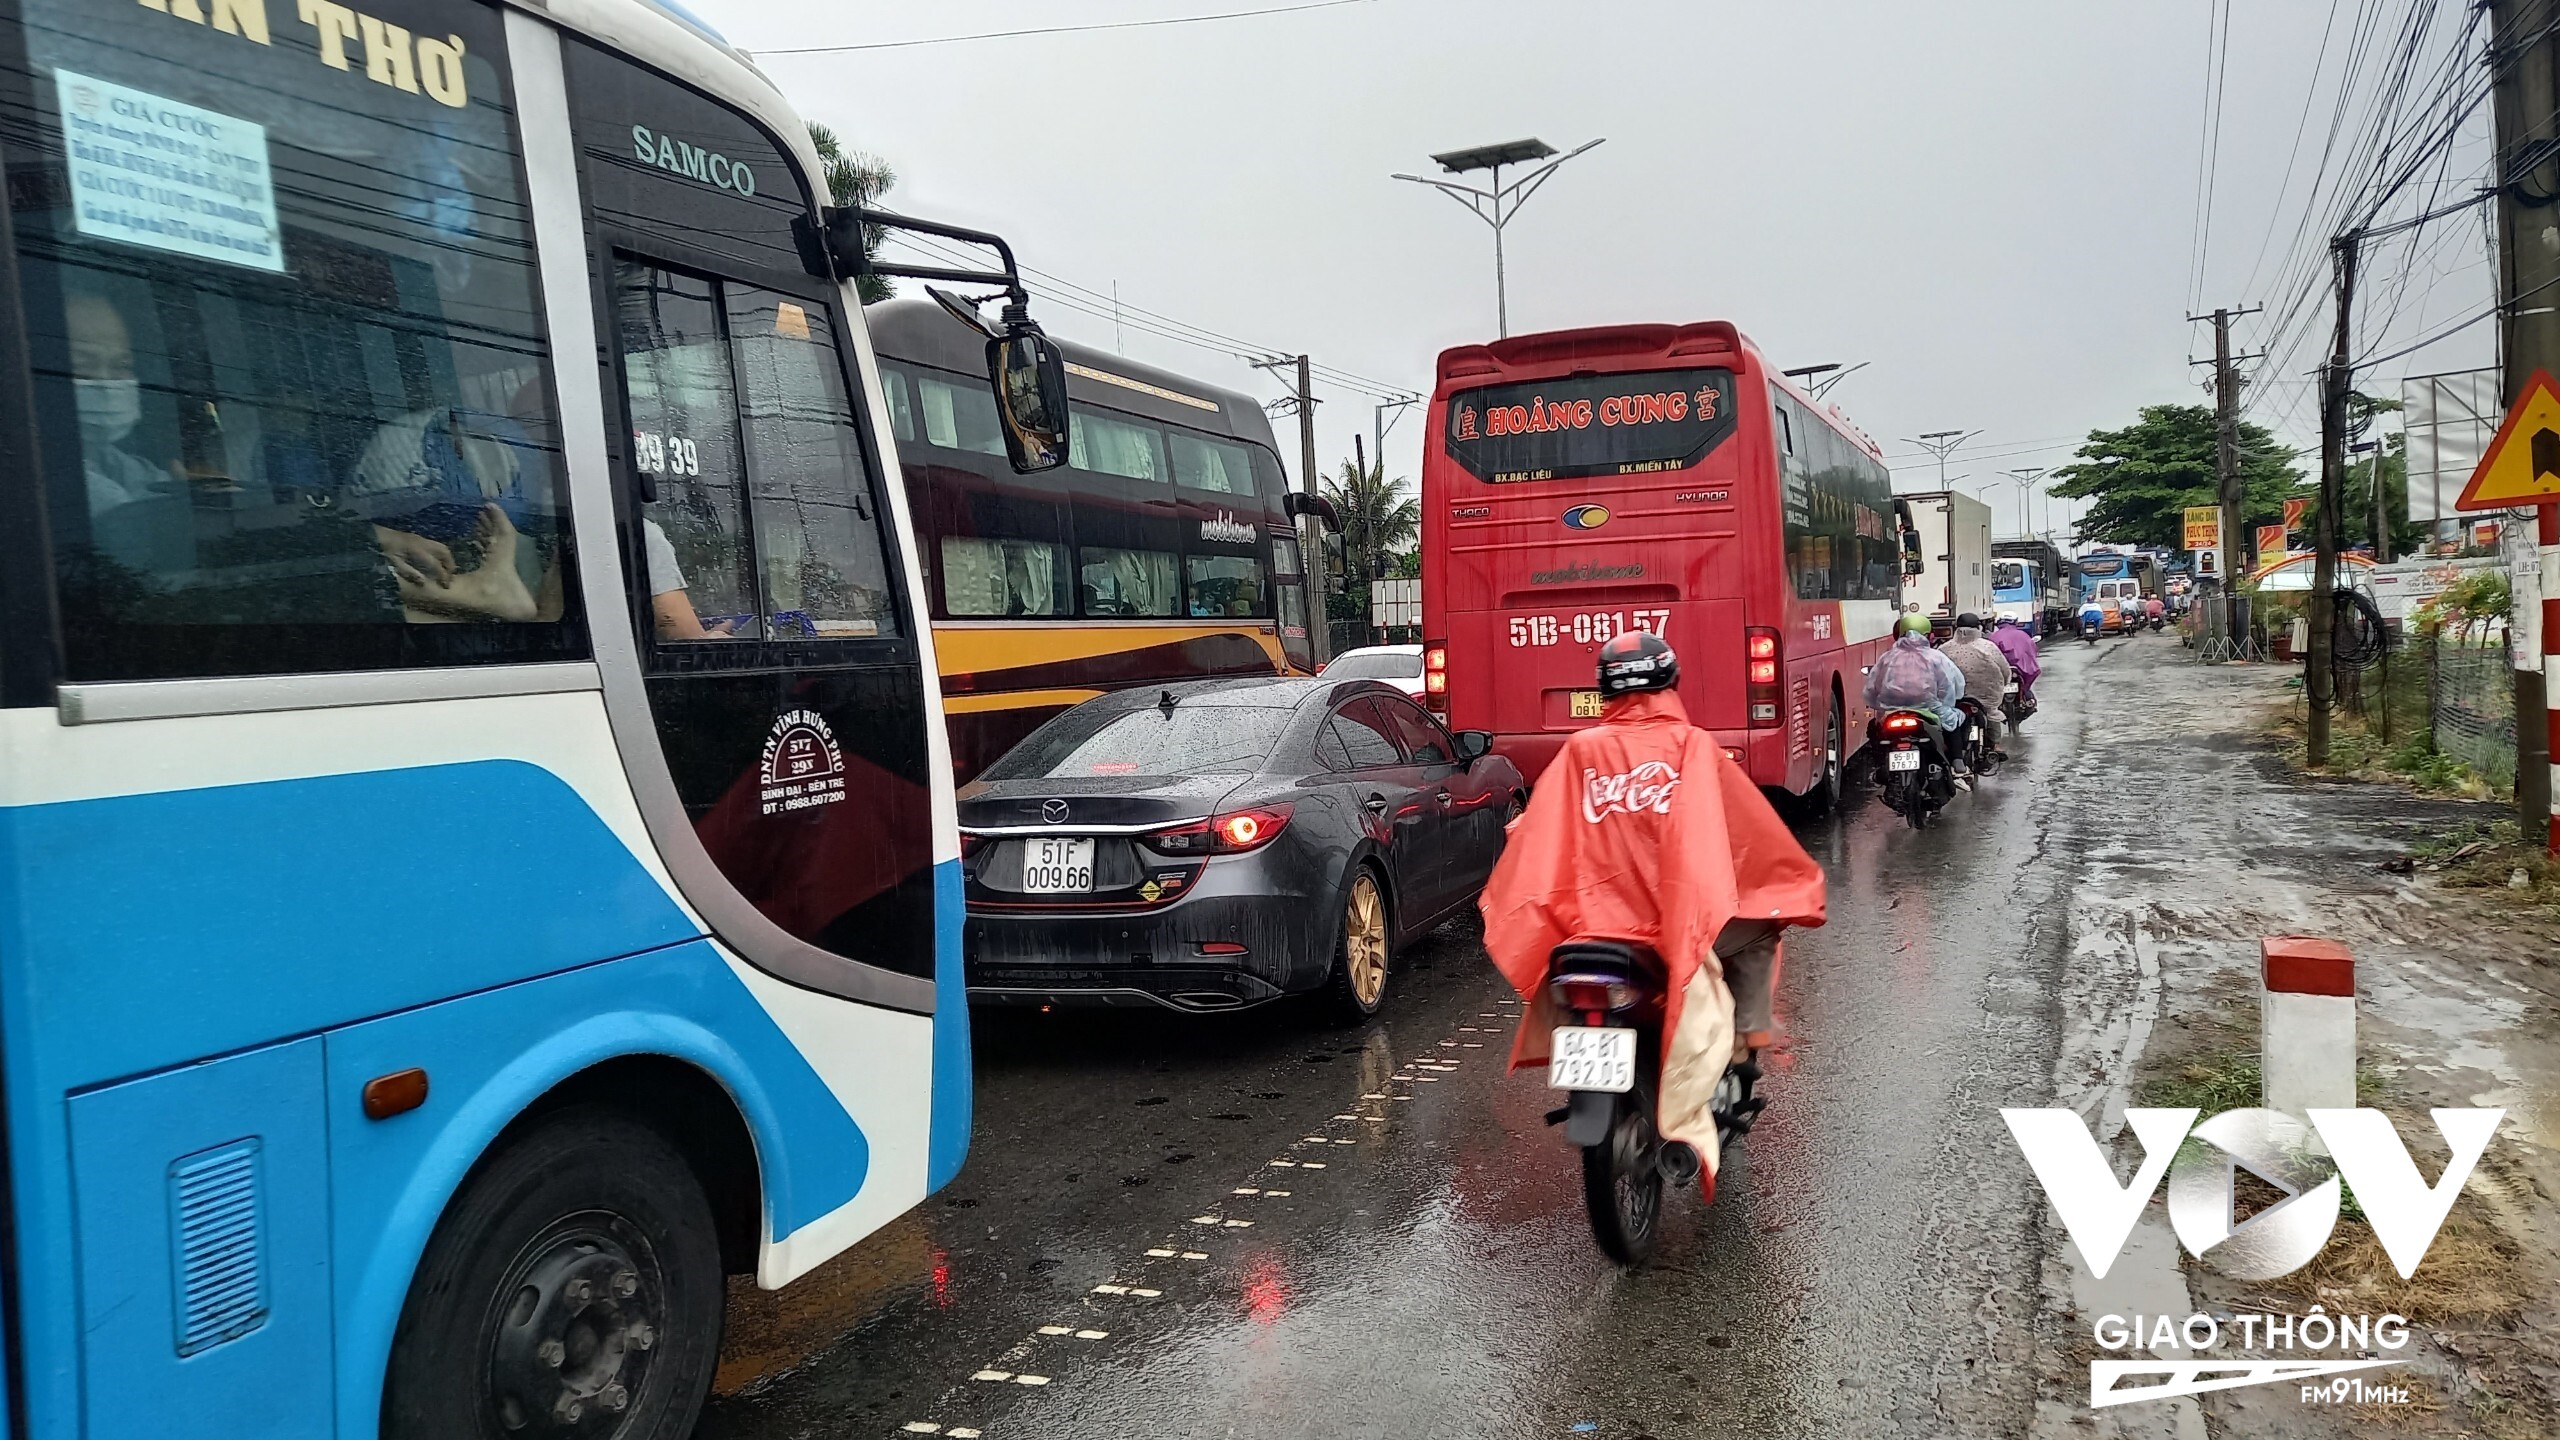 Quốc lộ 1A, đoạn qua tỉnh Vĩnh Long sáng 29/4, trời mưa to, xe đông, các phương tiện di chuyển chậm